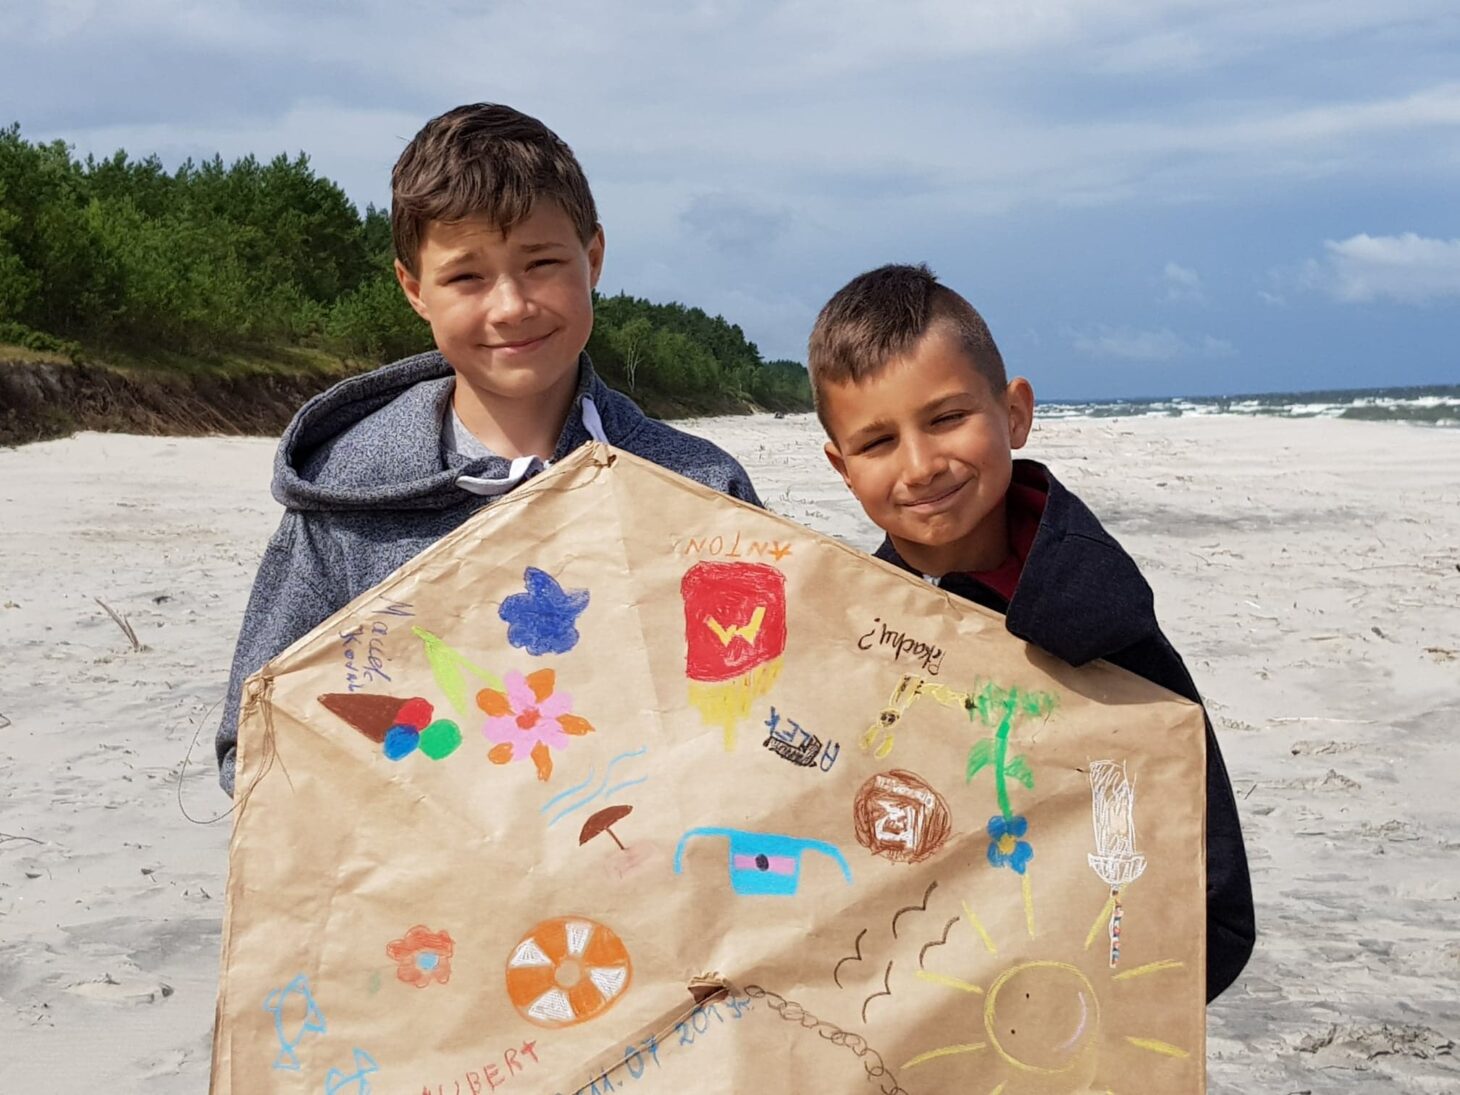 Dwaj chłopcy pokazują papierowy parasol na plaży.